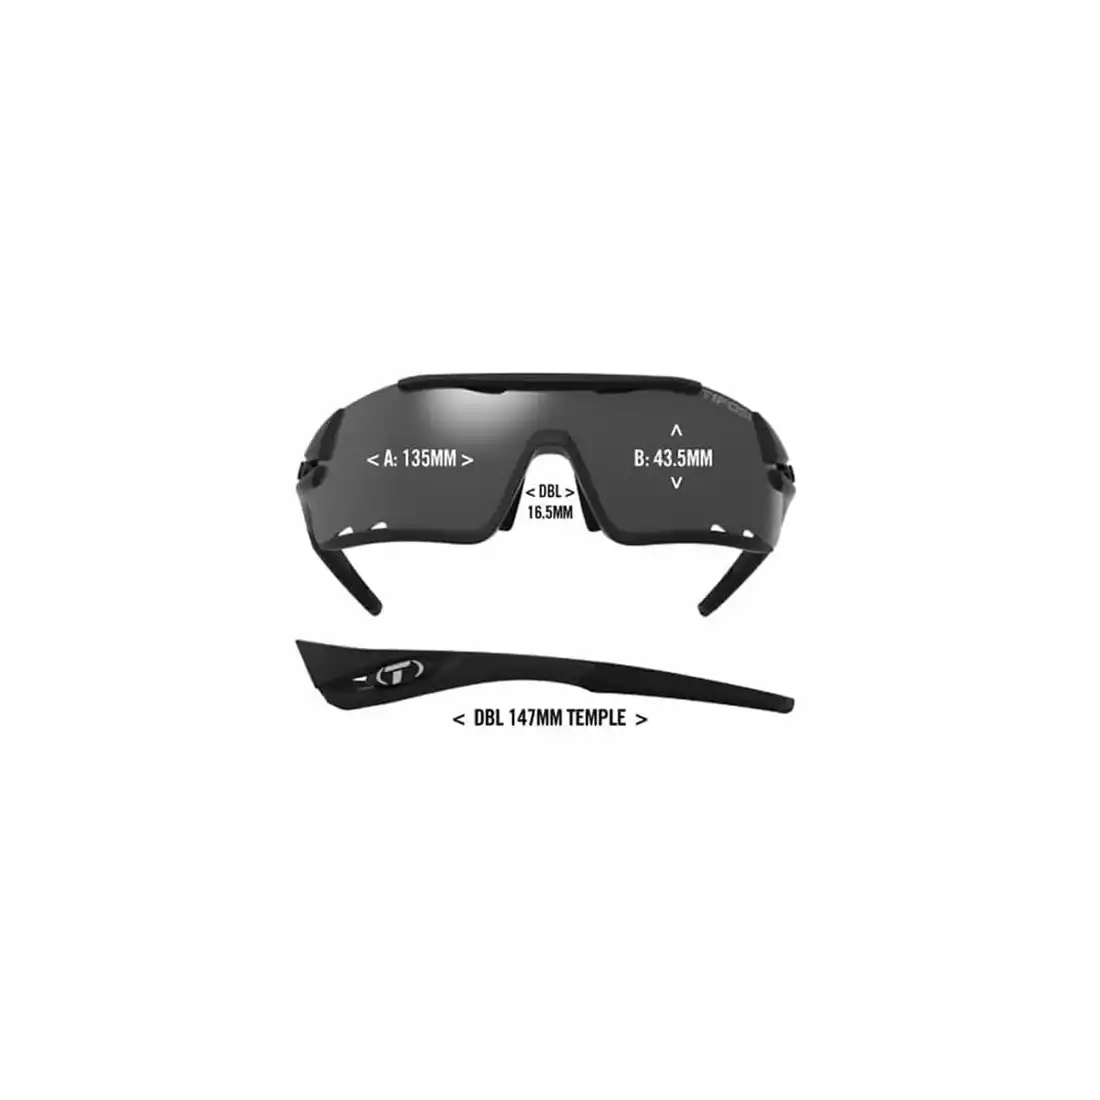 Okulary sportowe z wymiennymi soczewkami TIFOSI DAVOS white black TFI-1460104801